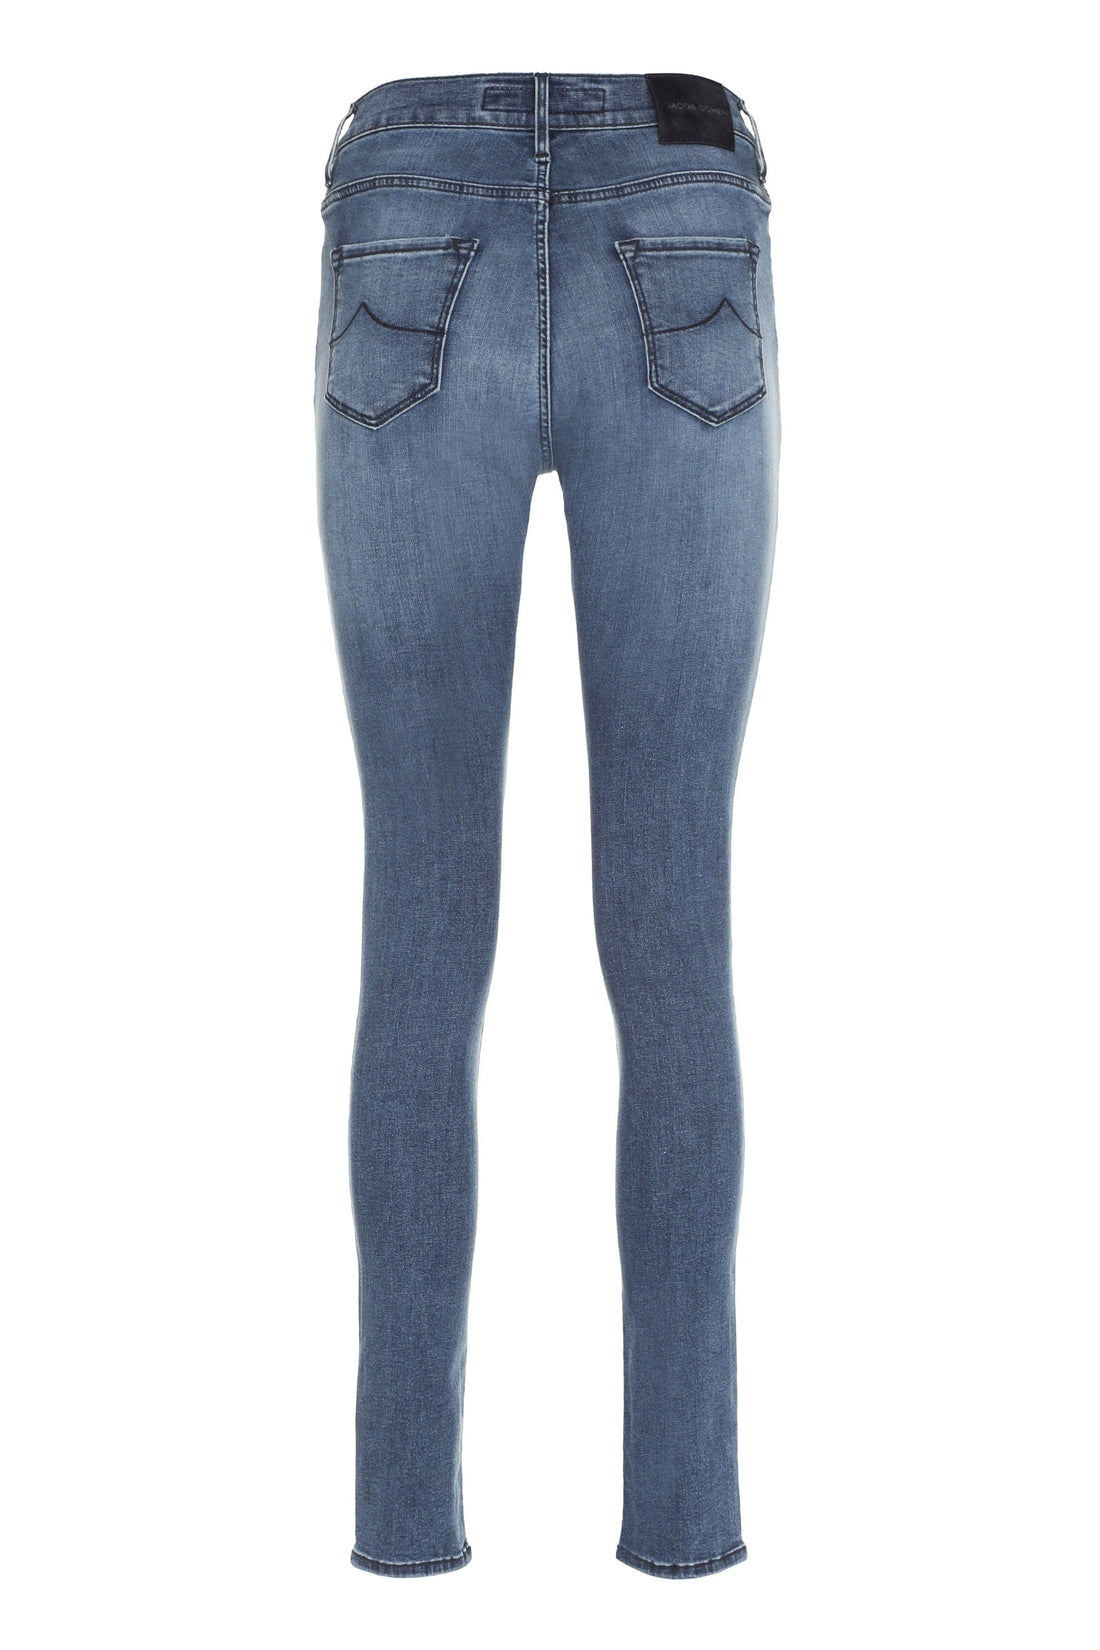 Jacob Cohen-OUTLET-SALE-5-pocket jeans-ARCHIVIST